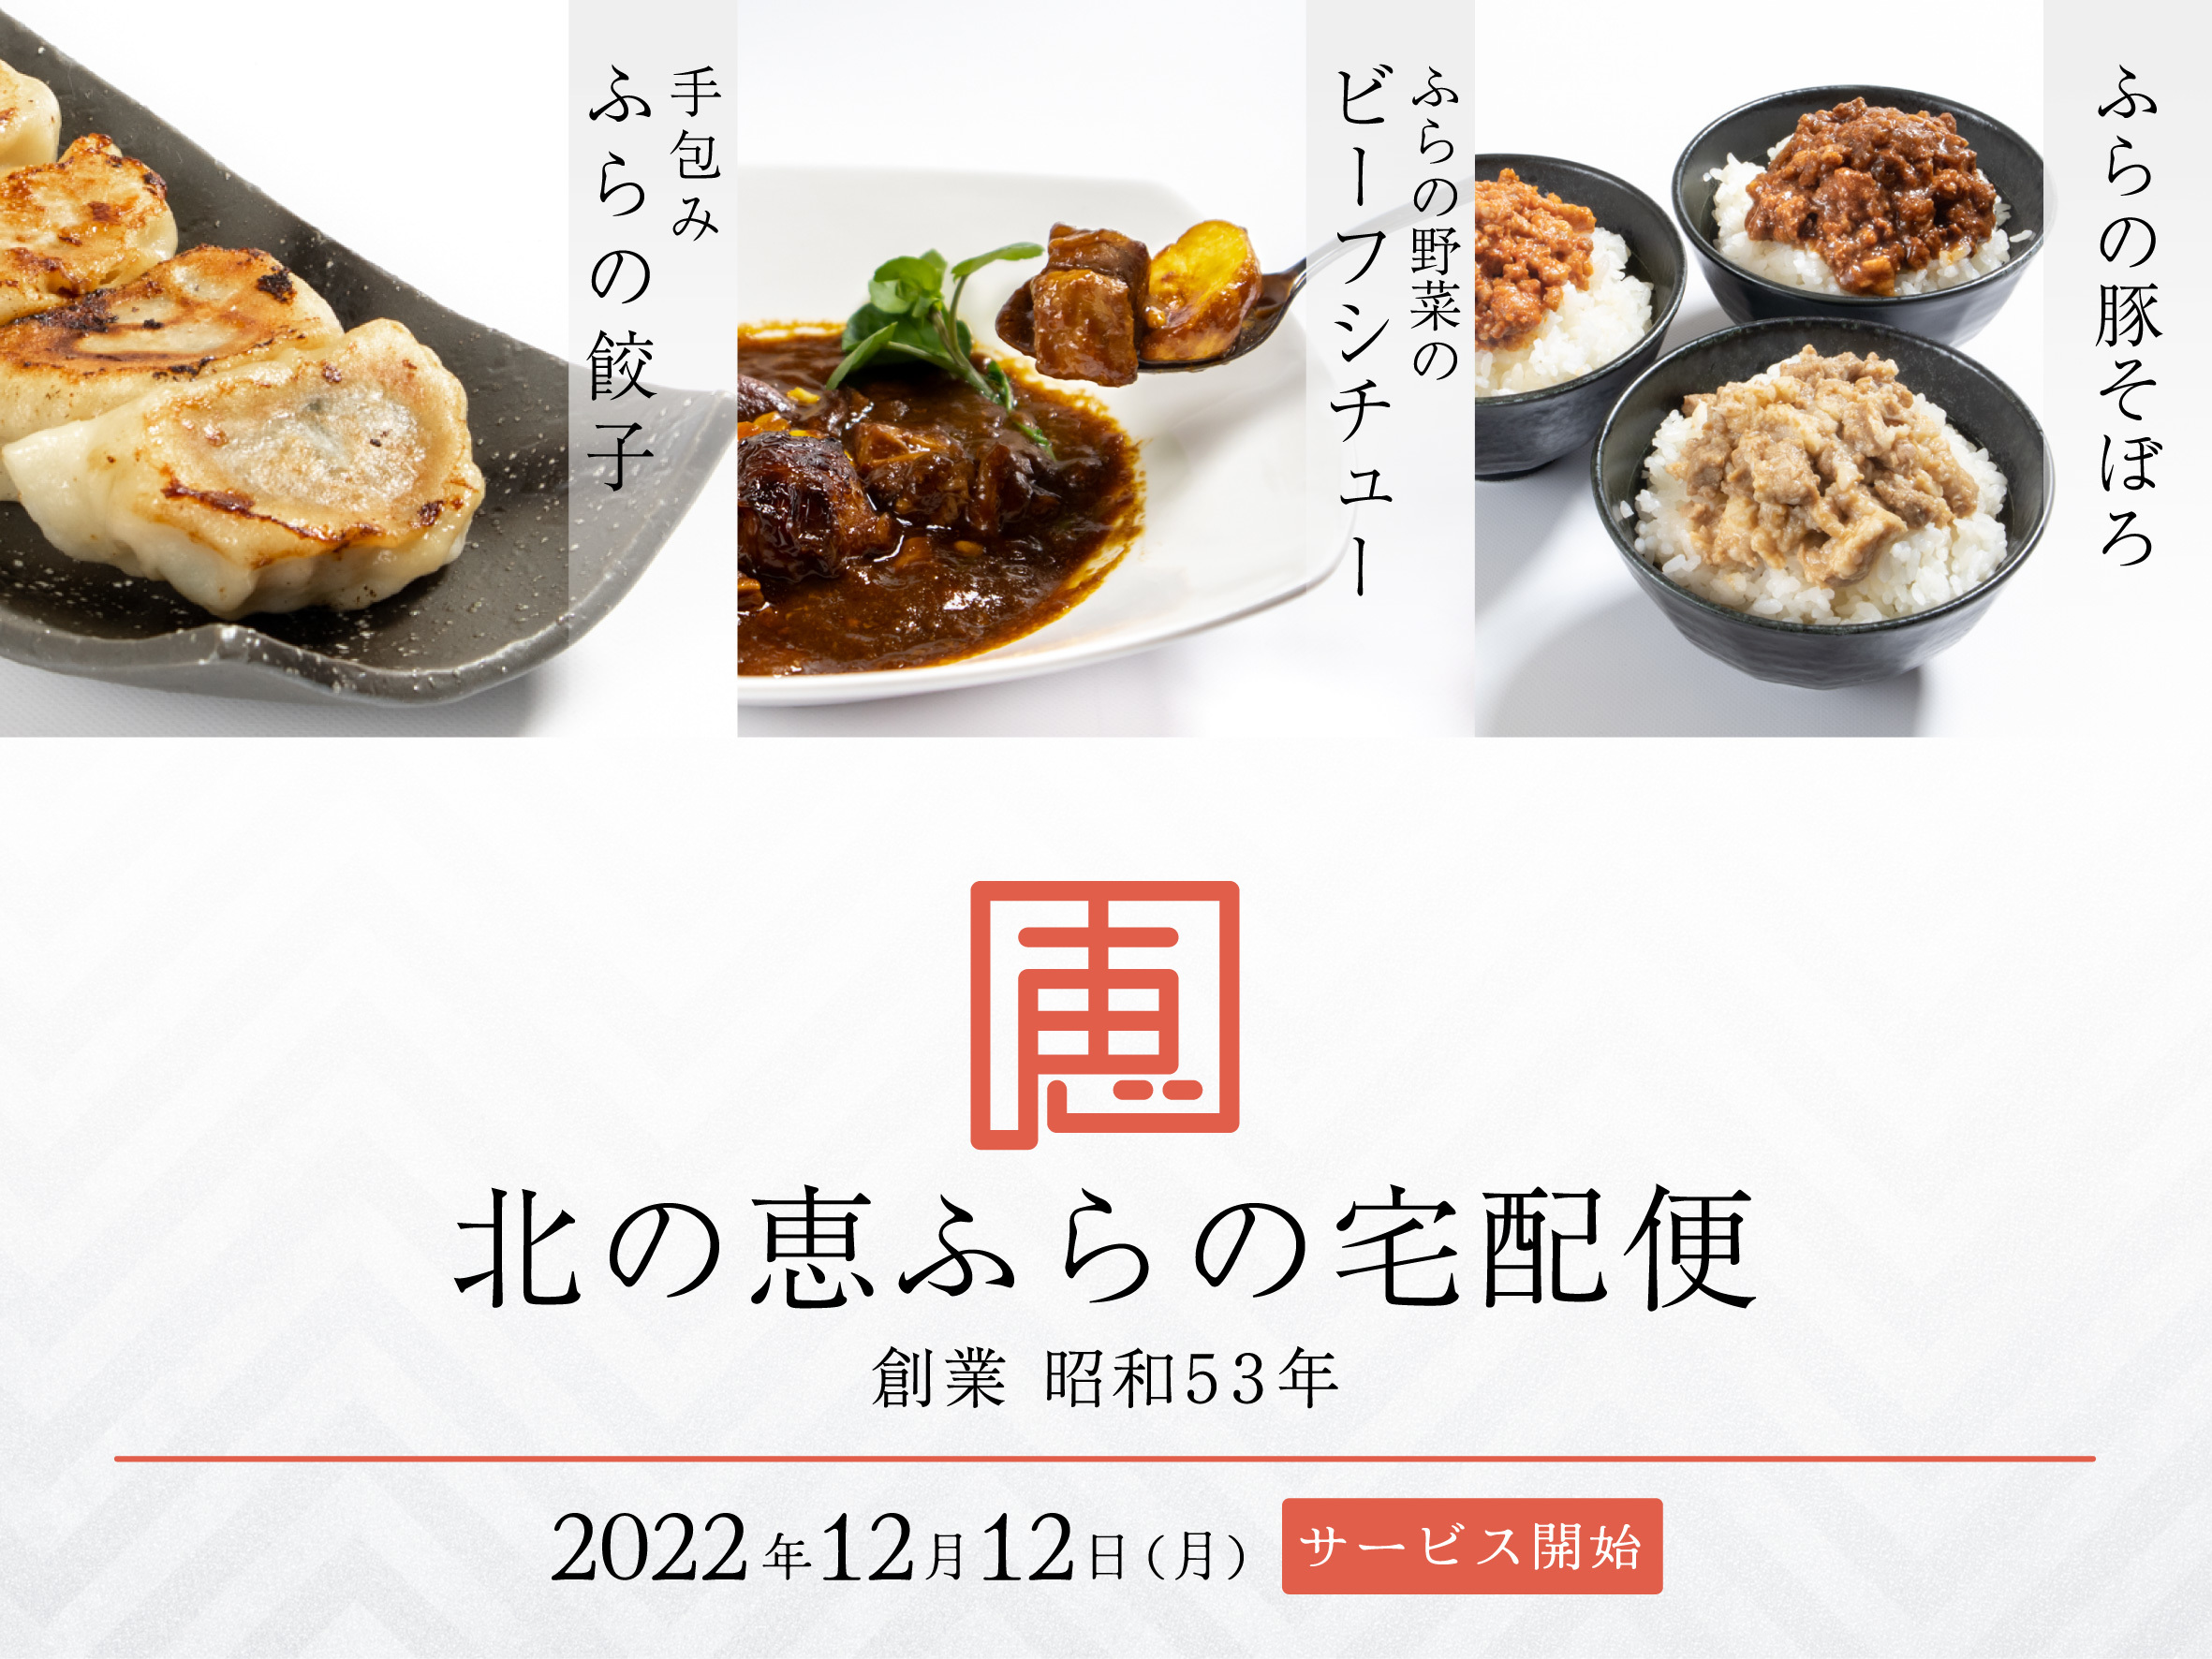 飲食店の新たな価値を「共」に「創」る 
変わり続ける、未来のために。
UCCグループの「トータルコーヒーソリューション」が
体験できるサステナブルな展示商談会
『UCC Smile Festa 2023』
東京・大阪・名古屋・札幌の4会場とオンラインにて開催！